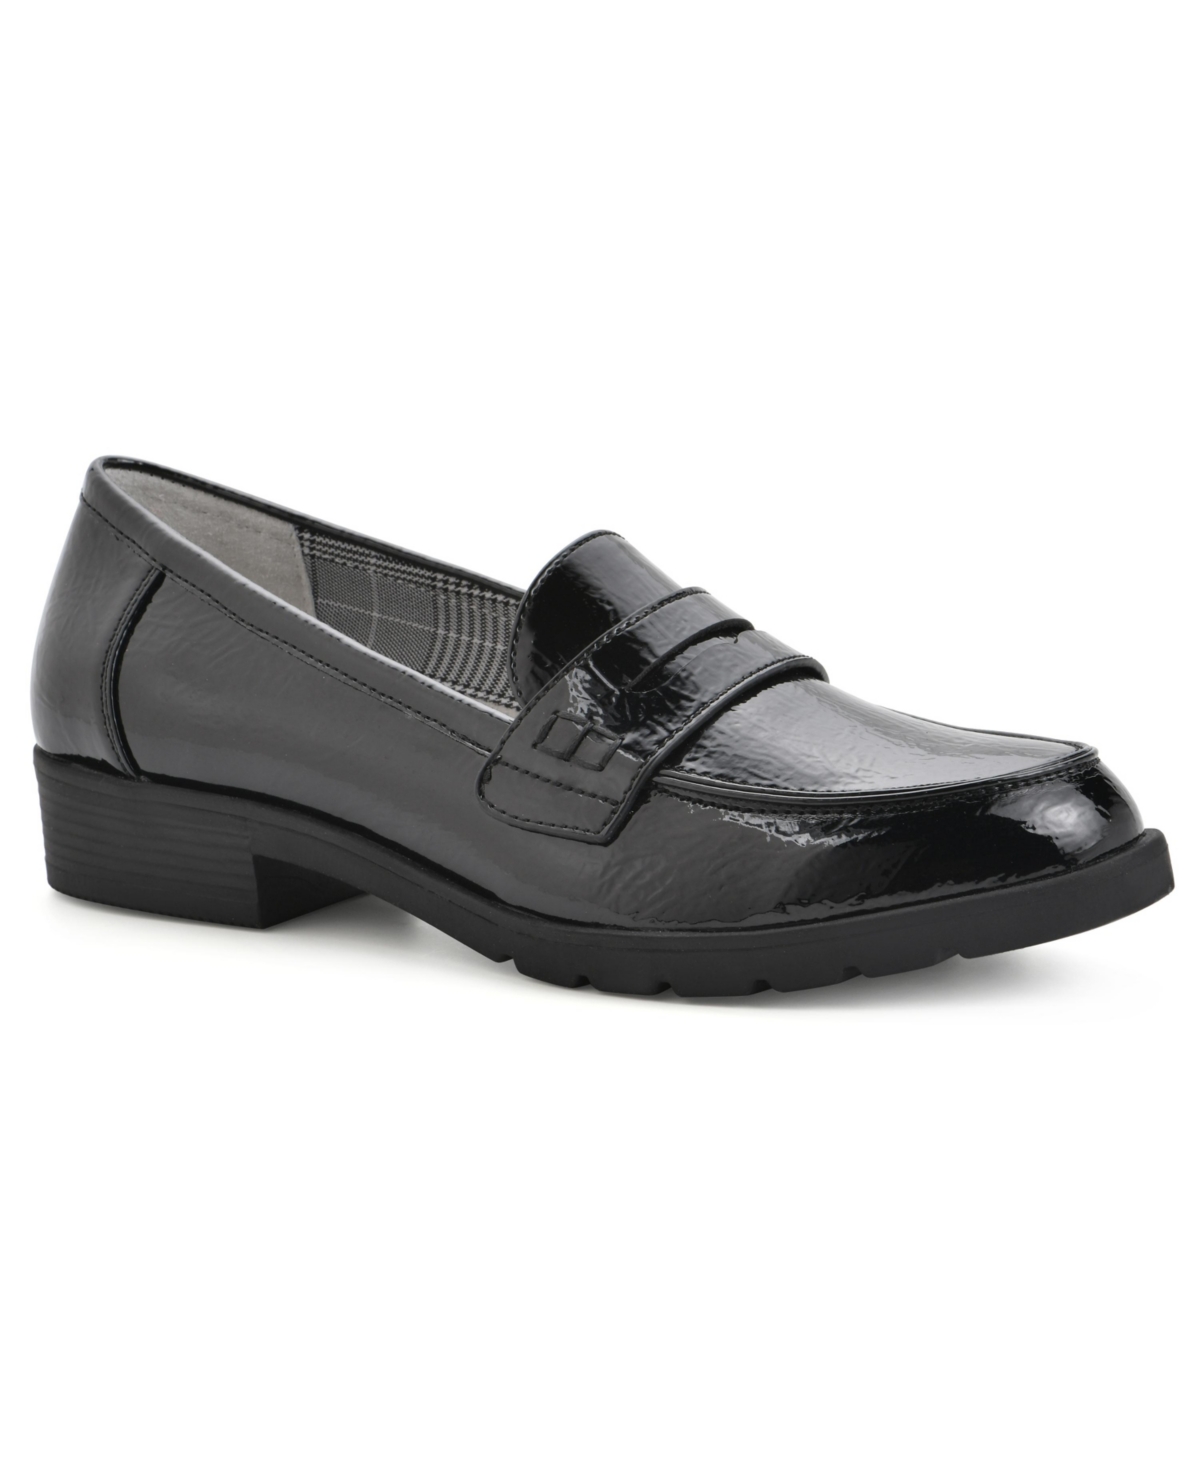 Women's Galah Block Heel Loafer - Taupe Smooth